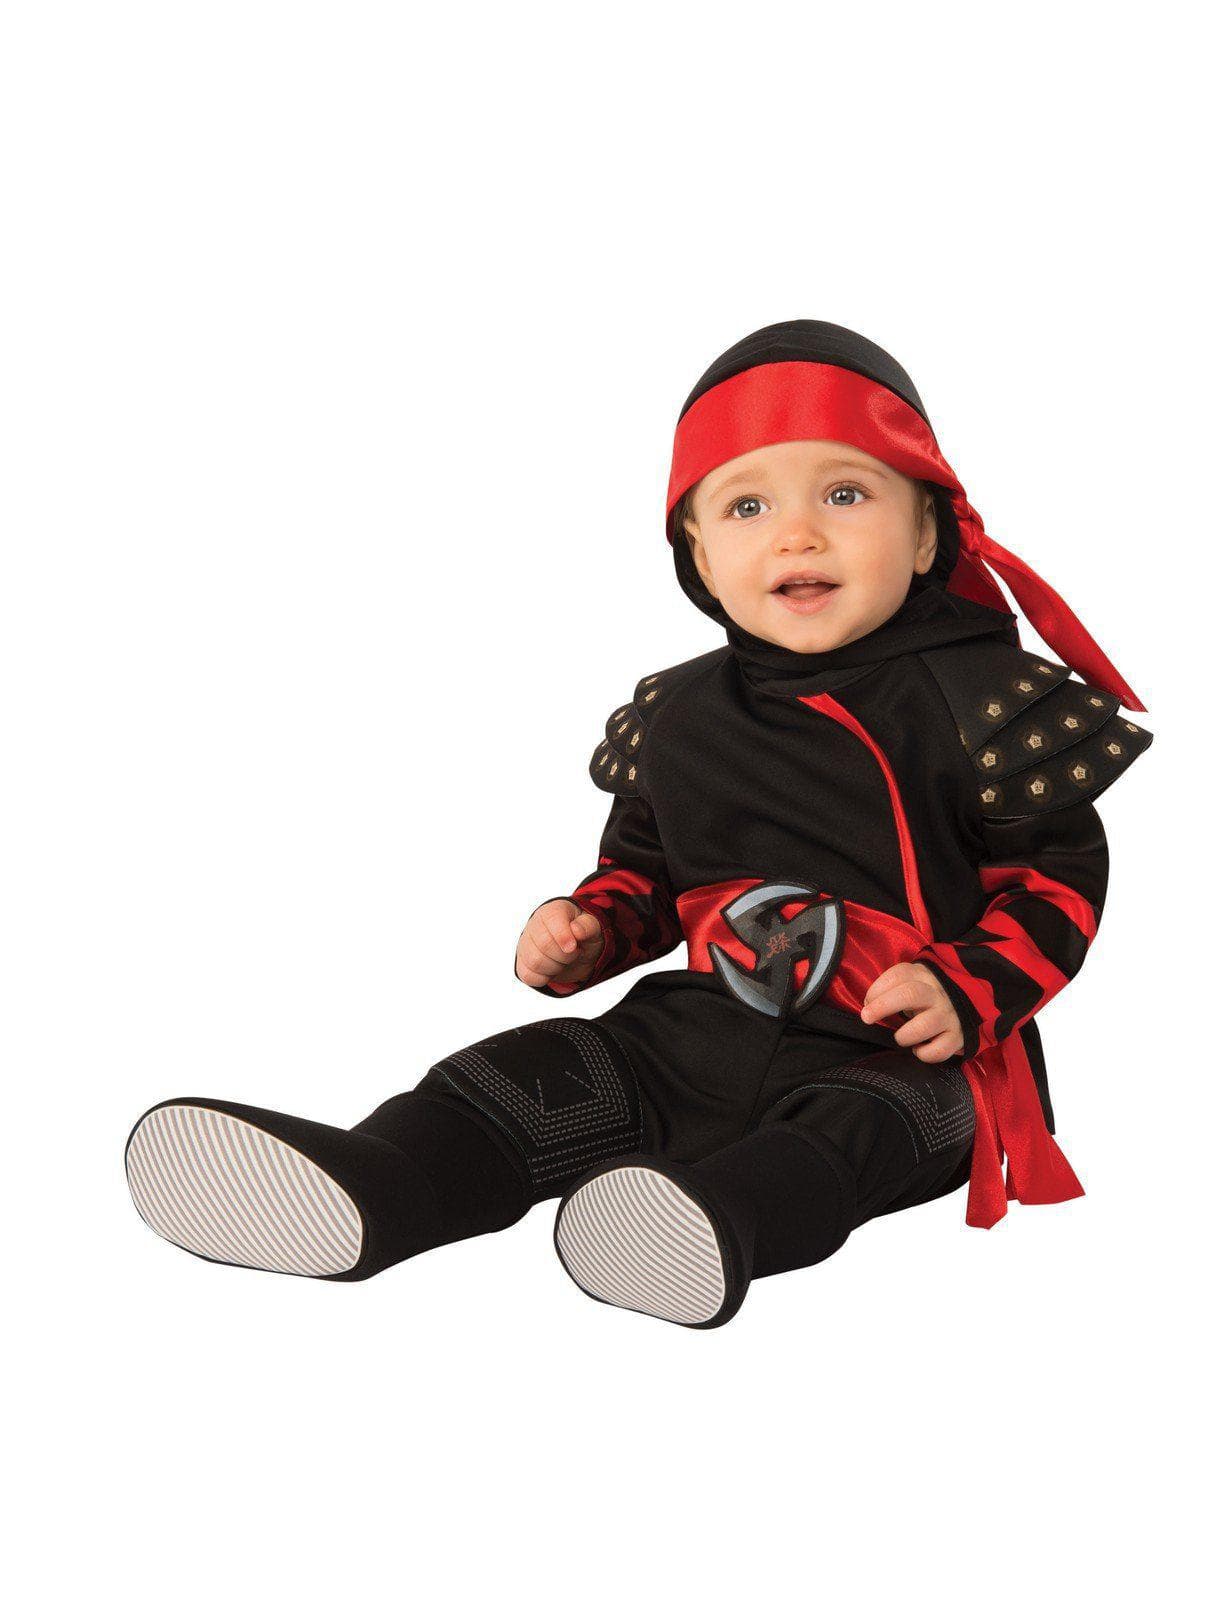 Baby/Toddler Ninja Costume - costumes.com